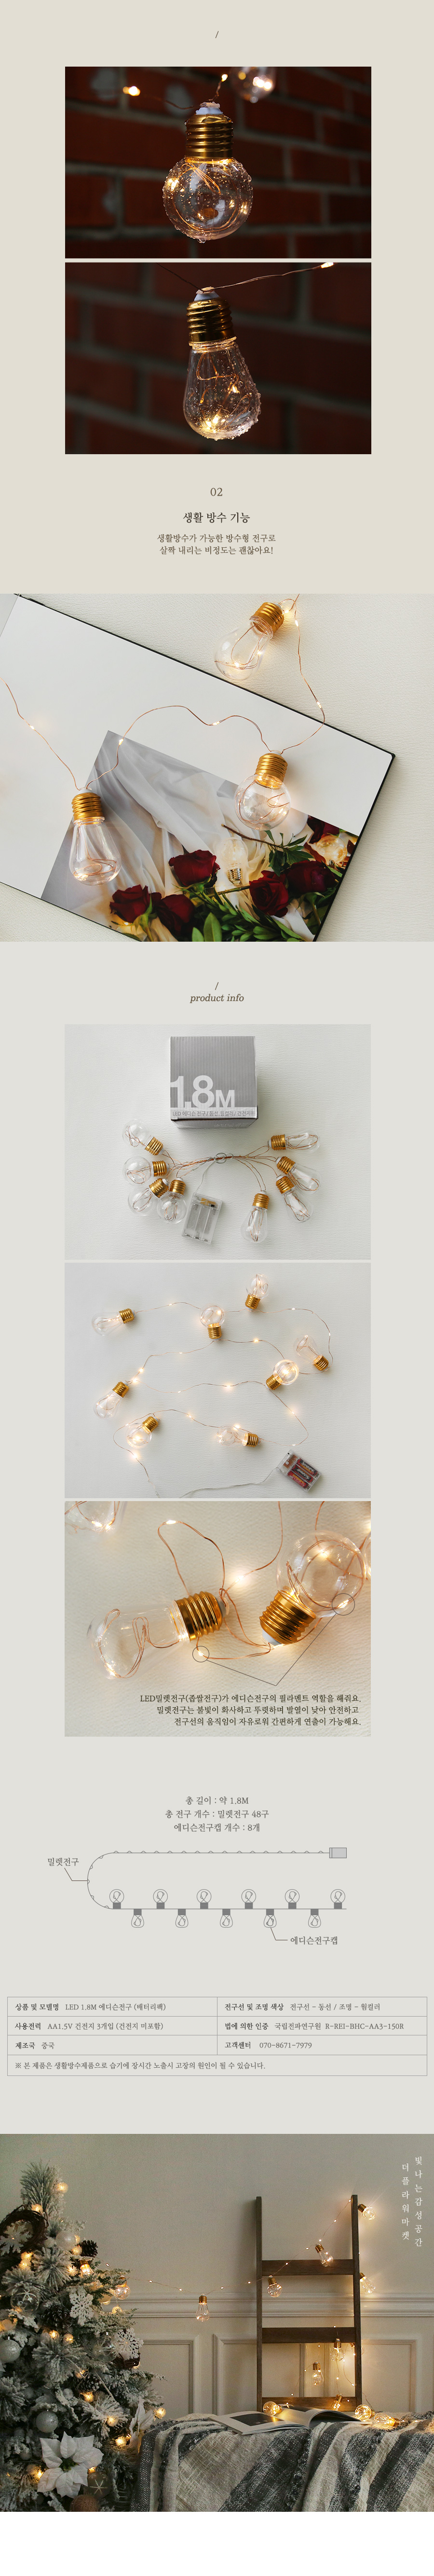 LED 1.8M 에디슨전구 (배터리팩) 15,000원 - 더플라워마켓 인테리어, 크리스마스, 조명, 트리조명 바보사랑 LED 1.8M 에디슨전구 (배터리팩) 15,000원 - 더플라워마켓 인테리어, 크리스마스, 조명, 트리조명 바보사랑